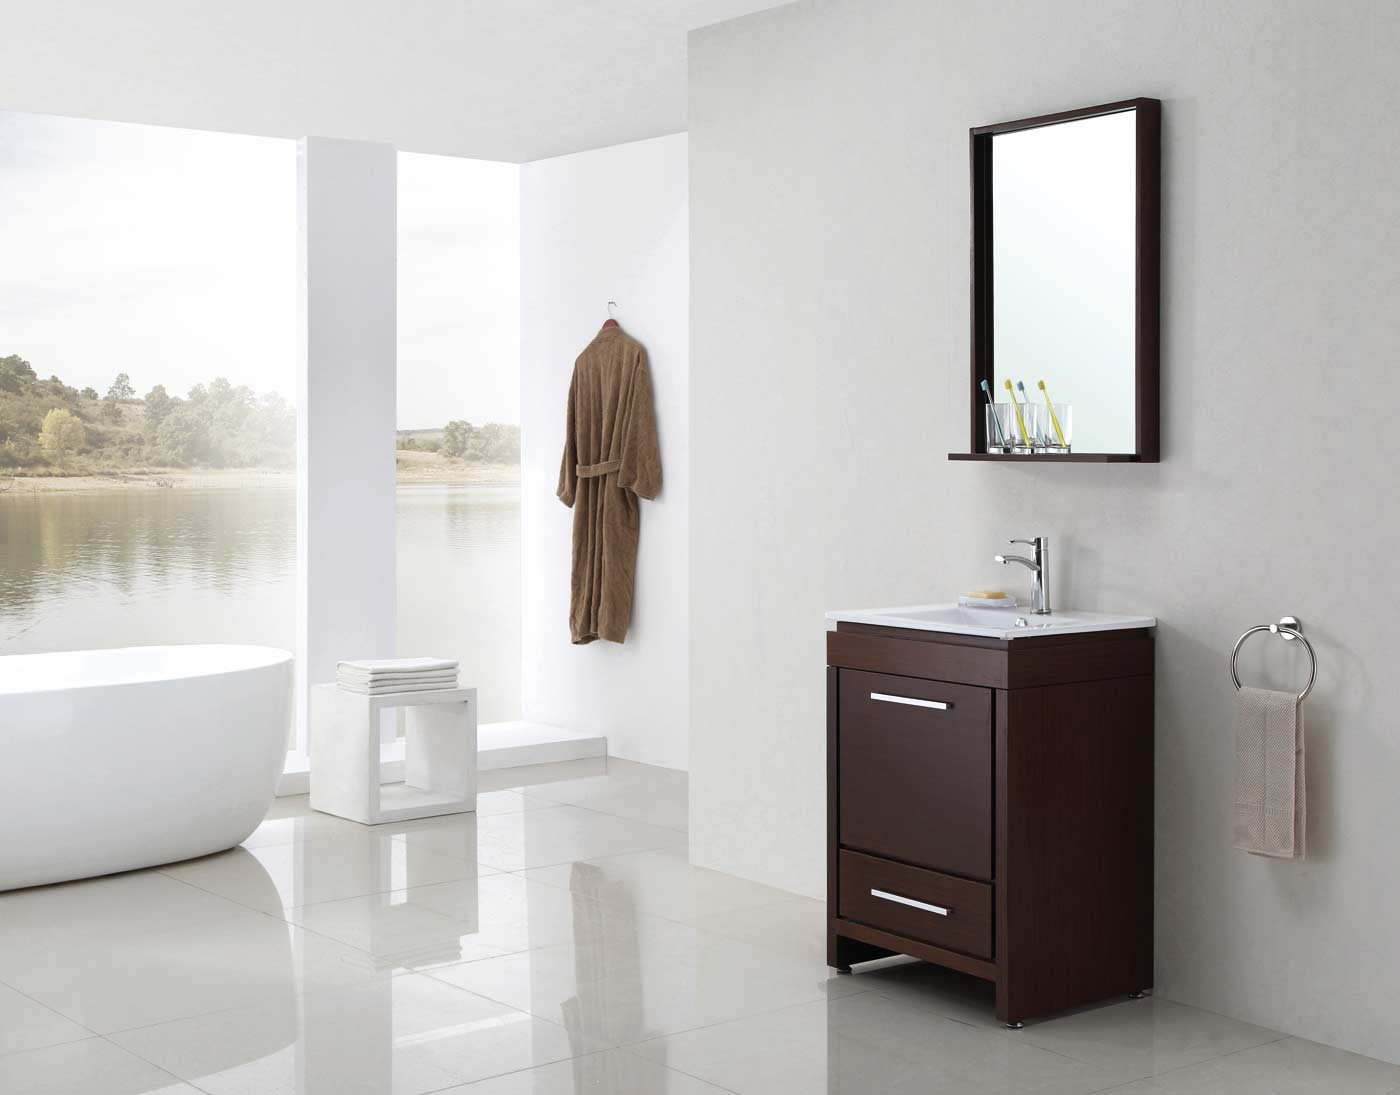 Bathroom Vanity And Mirror
 Buy Parma 24 In Single Bathroom Vanity Mirror Set in Iron